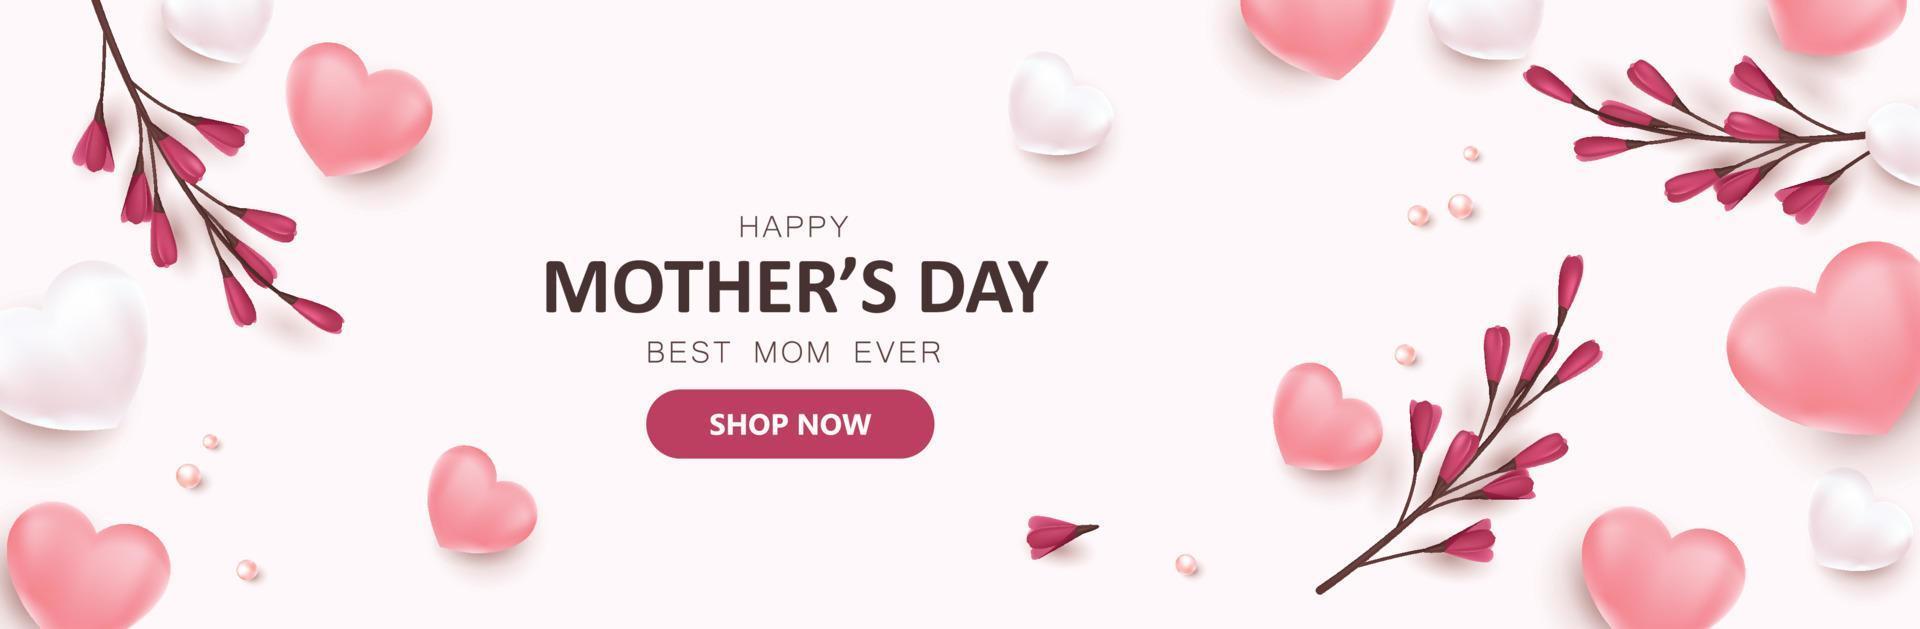 mors dag marknadsföring försäljning banner bakgrund layout med hjärtformade ballonger och blomma vektor